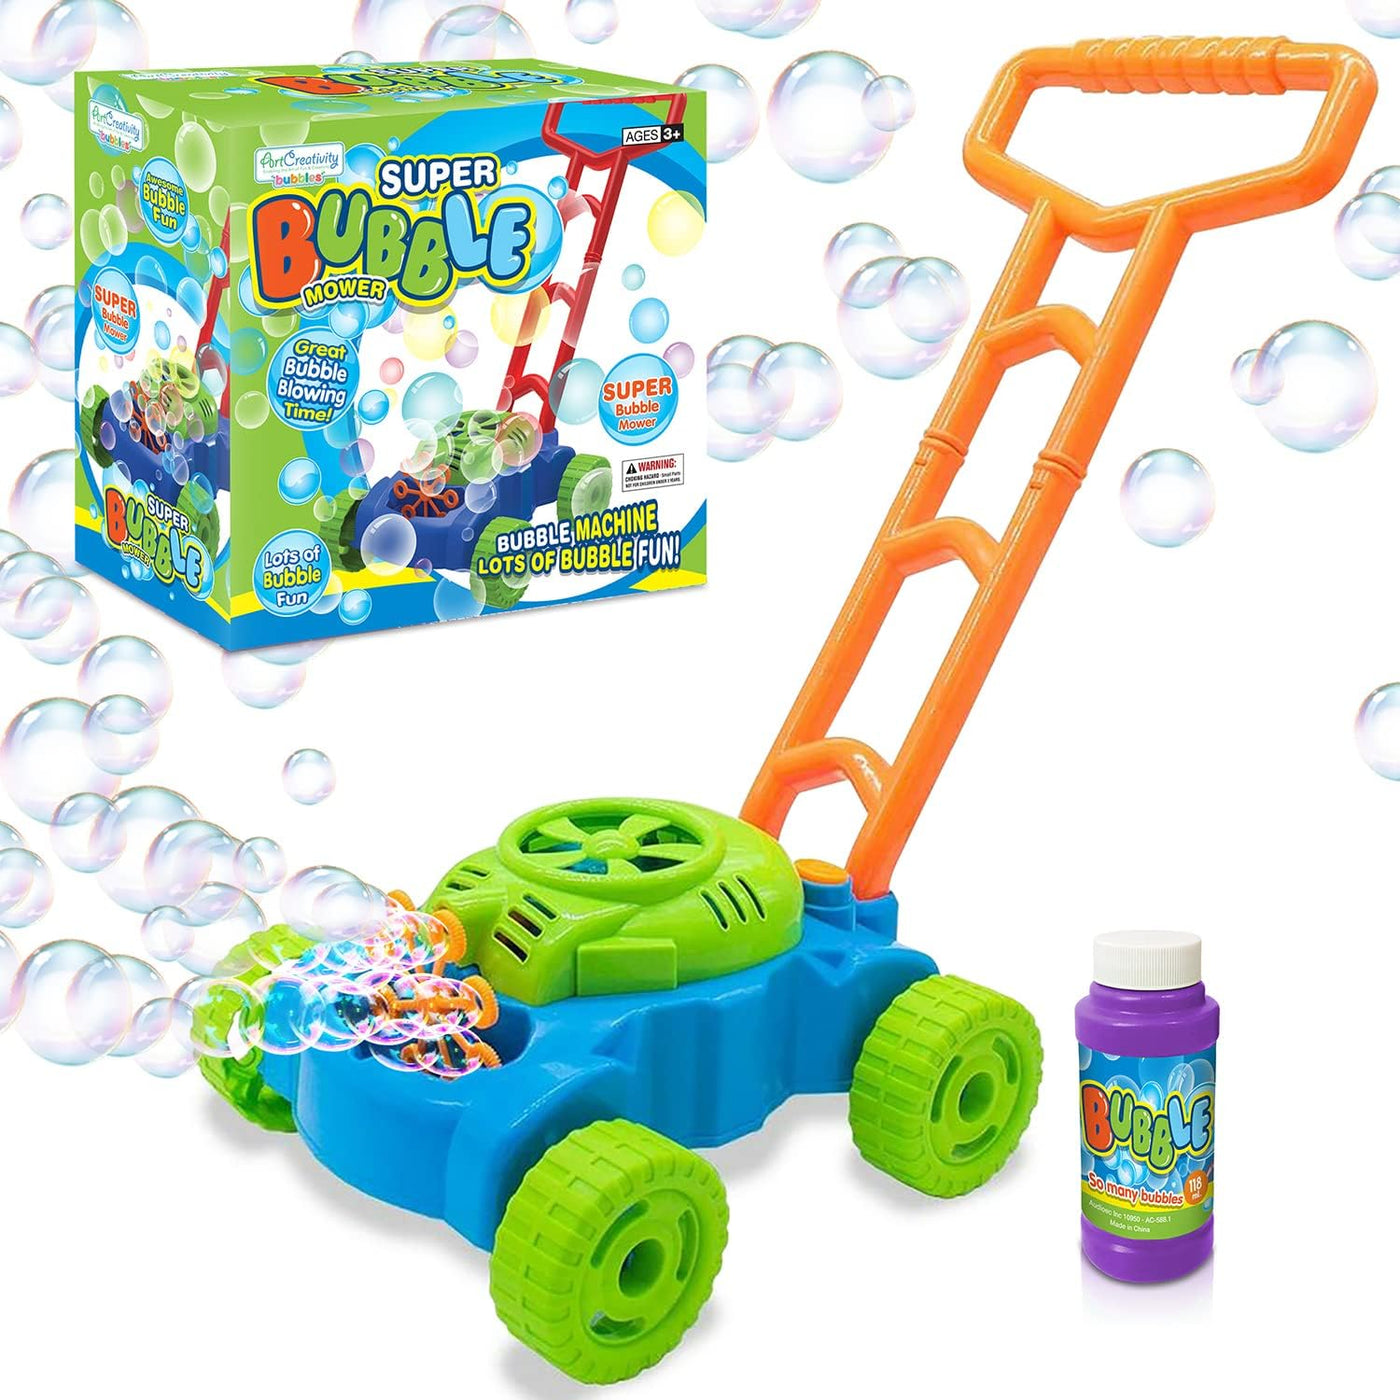 Wholesale Bubble Mower Toys MULTI COLOR